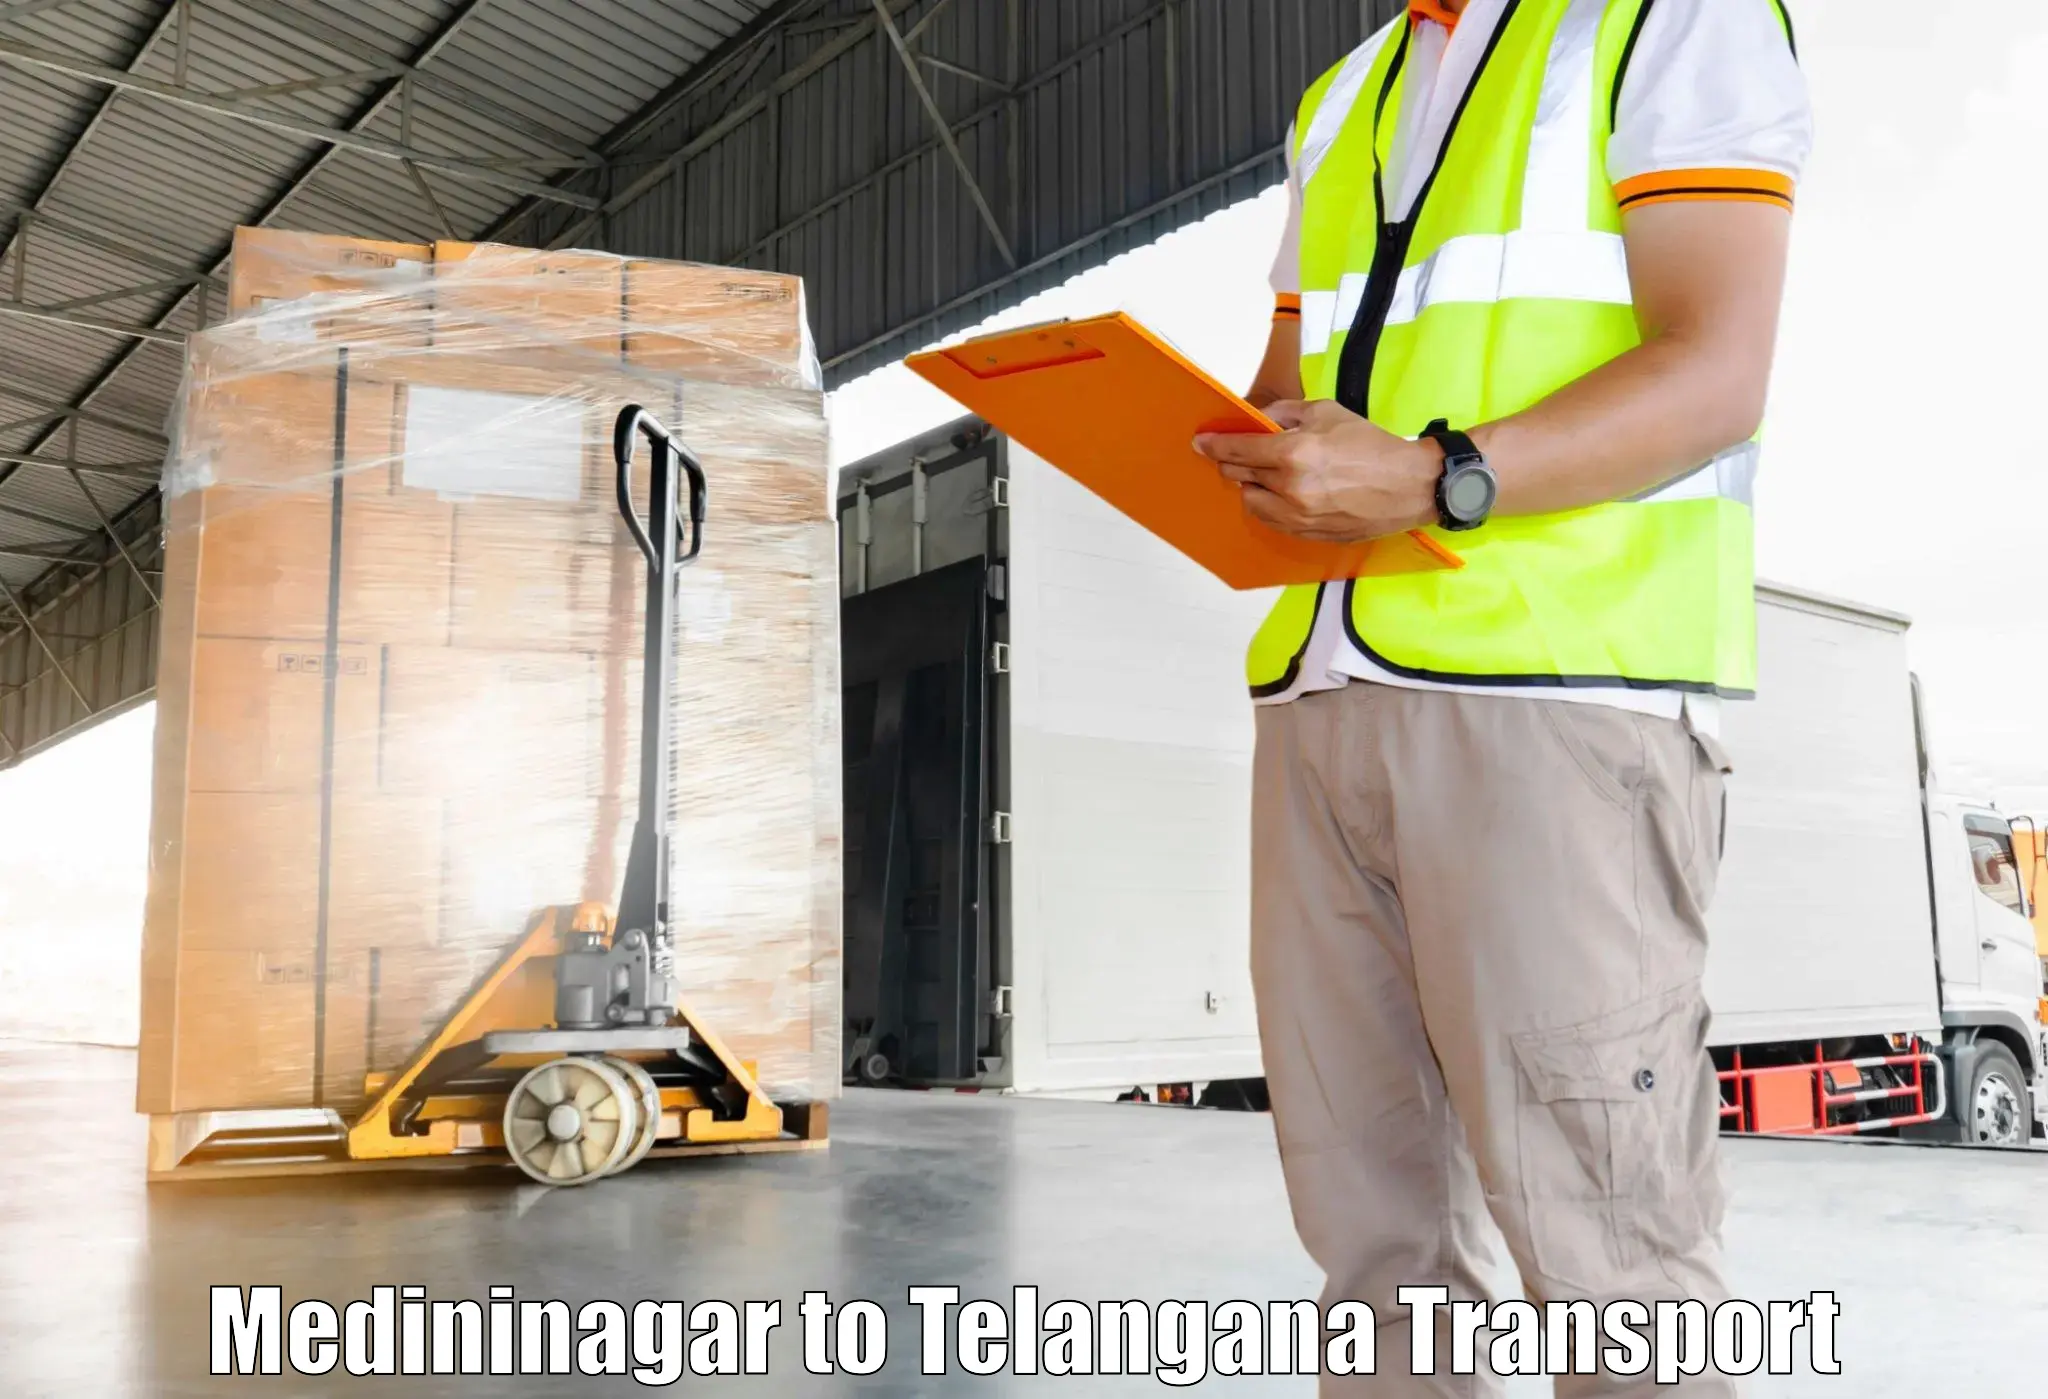 Pick up transport service Medininagar to Moinabad